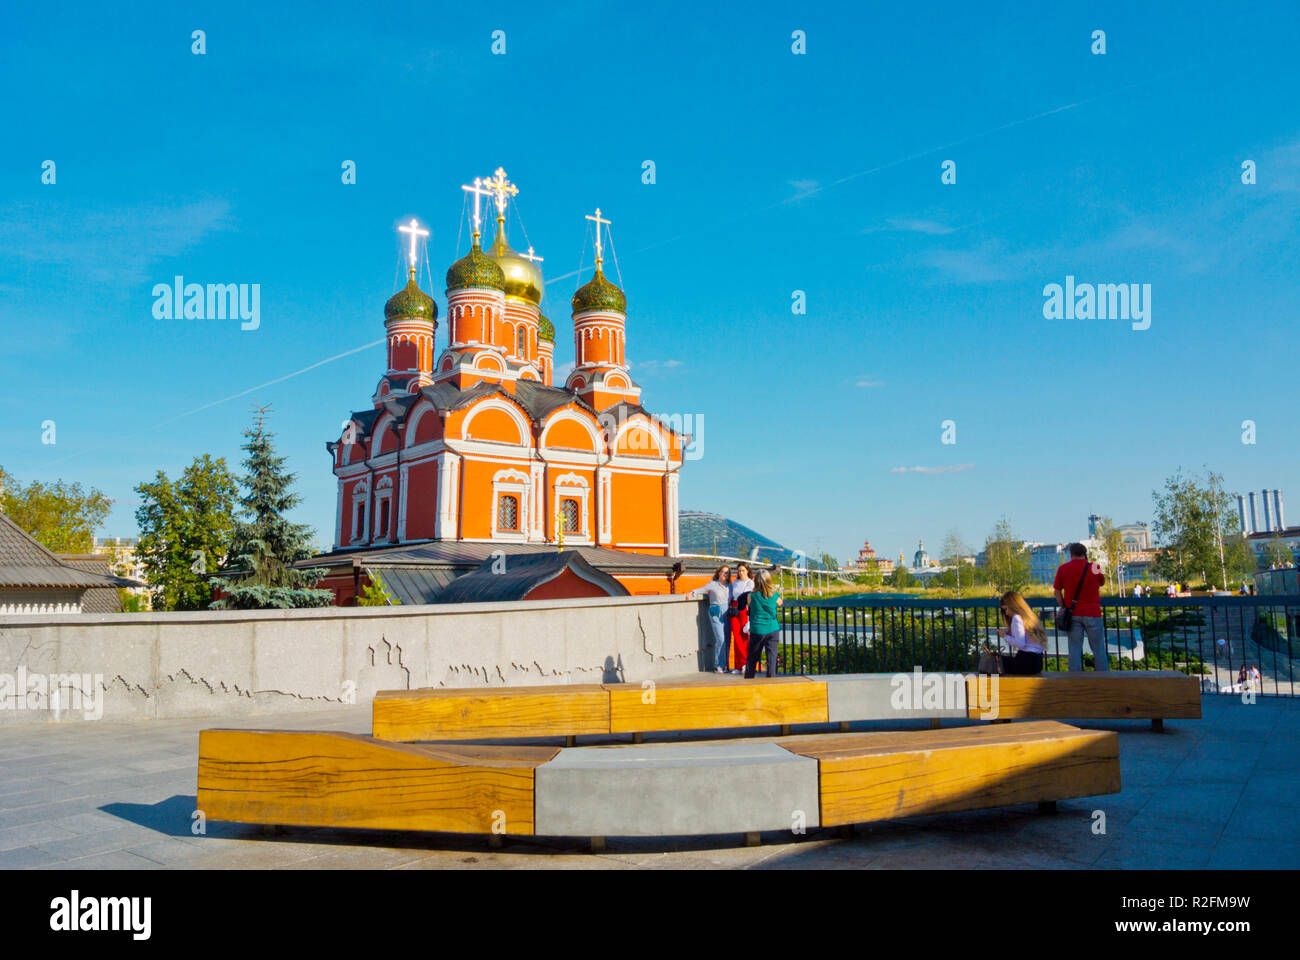 Cattedrale del monastero di Nostra Signora del segno, monastero Znamensky, Zaryadye Park, Mosca, Russia Foto Stock